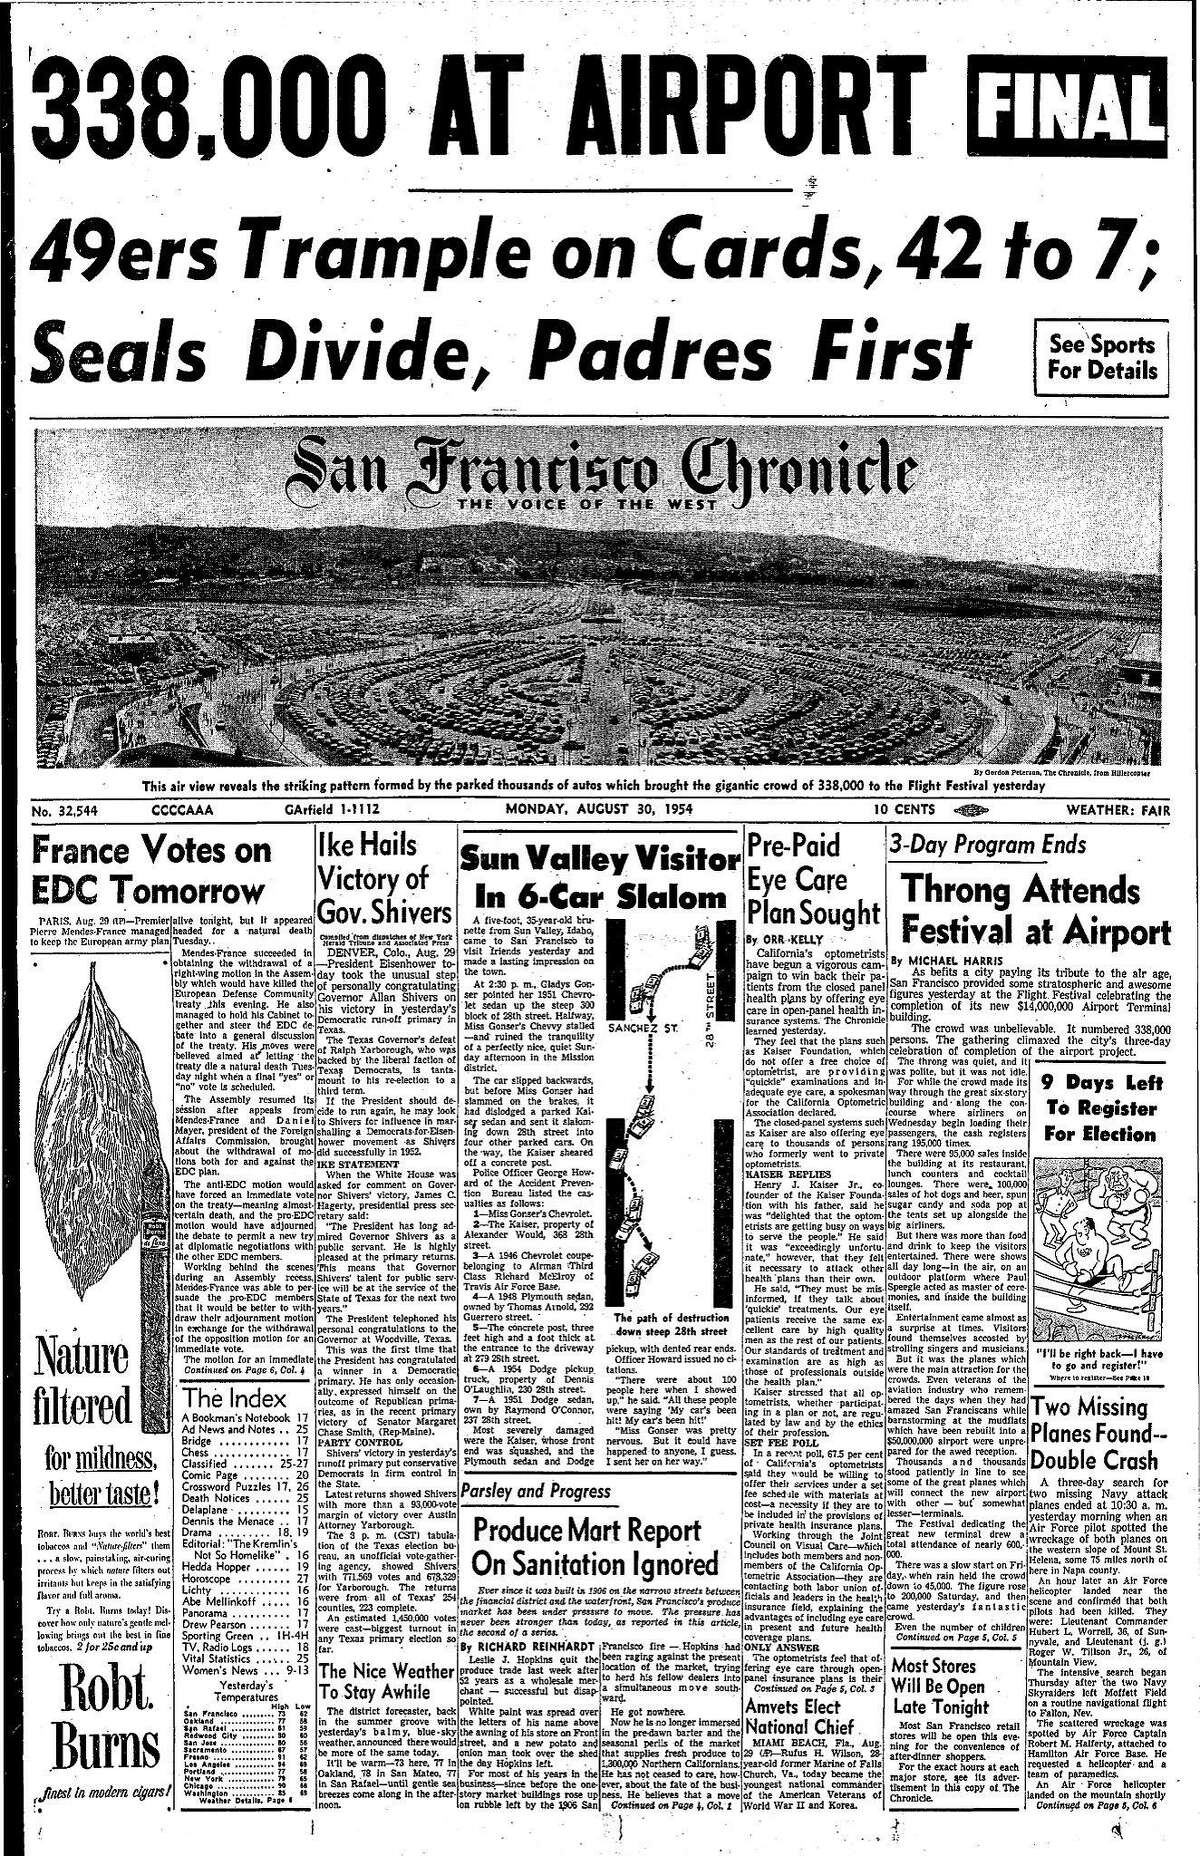 历史纪事报头版1954年8月28日旧金山新机场航站楼揭幕